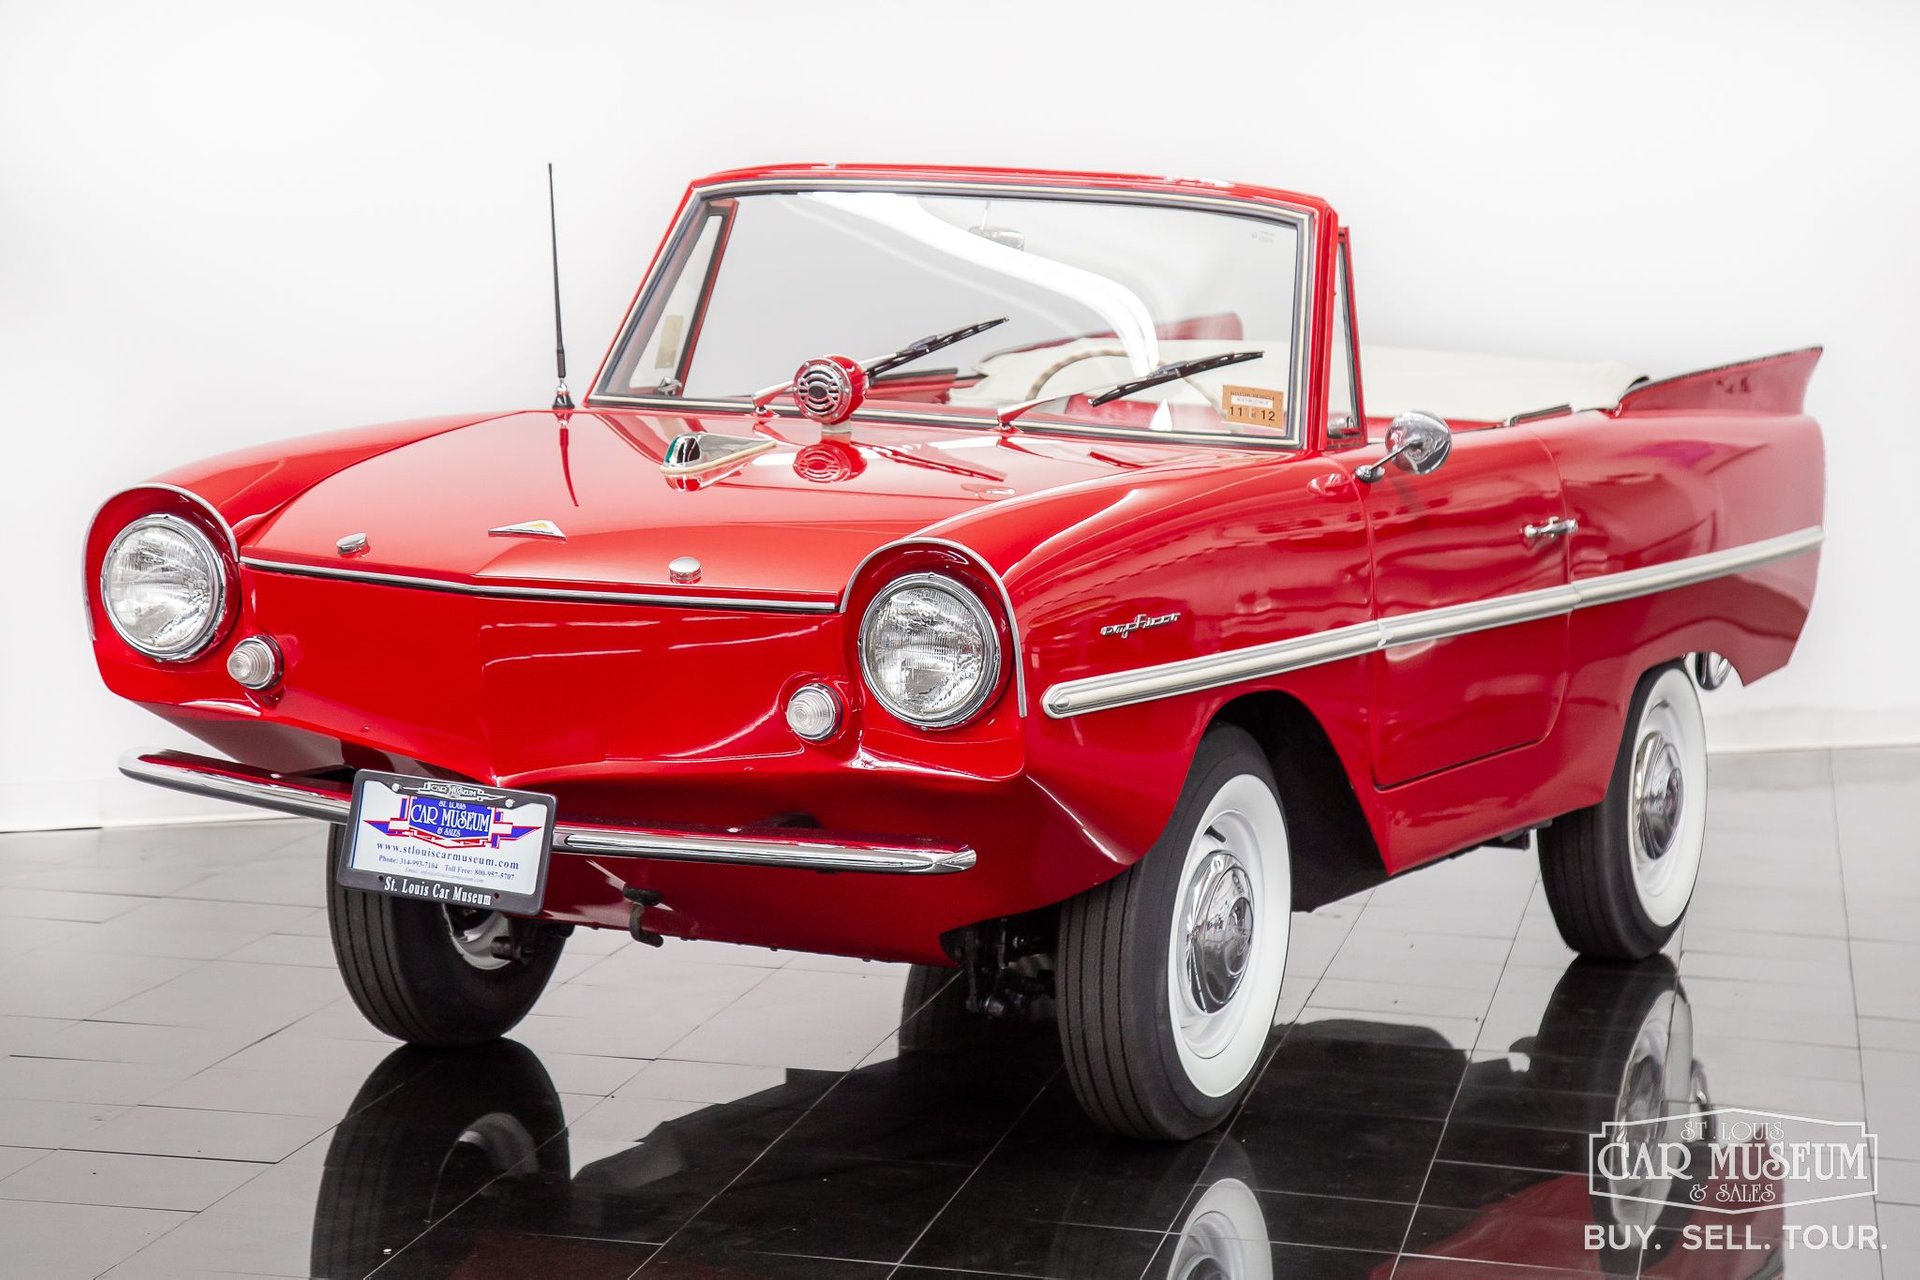 1962 Amphicar Model For Sale | St. Louis Car Museum